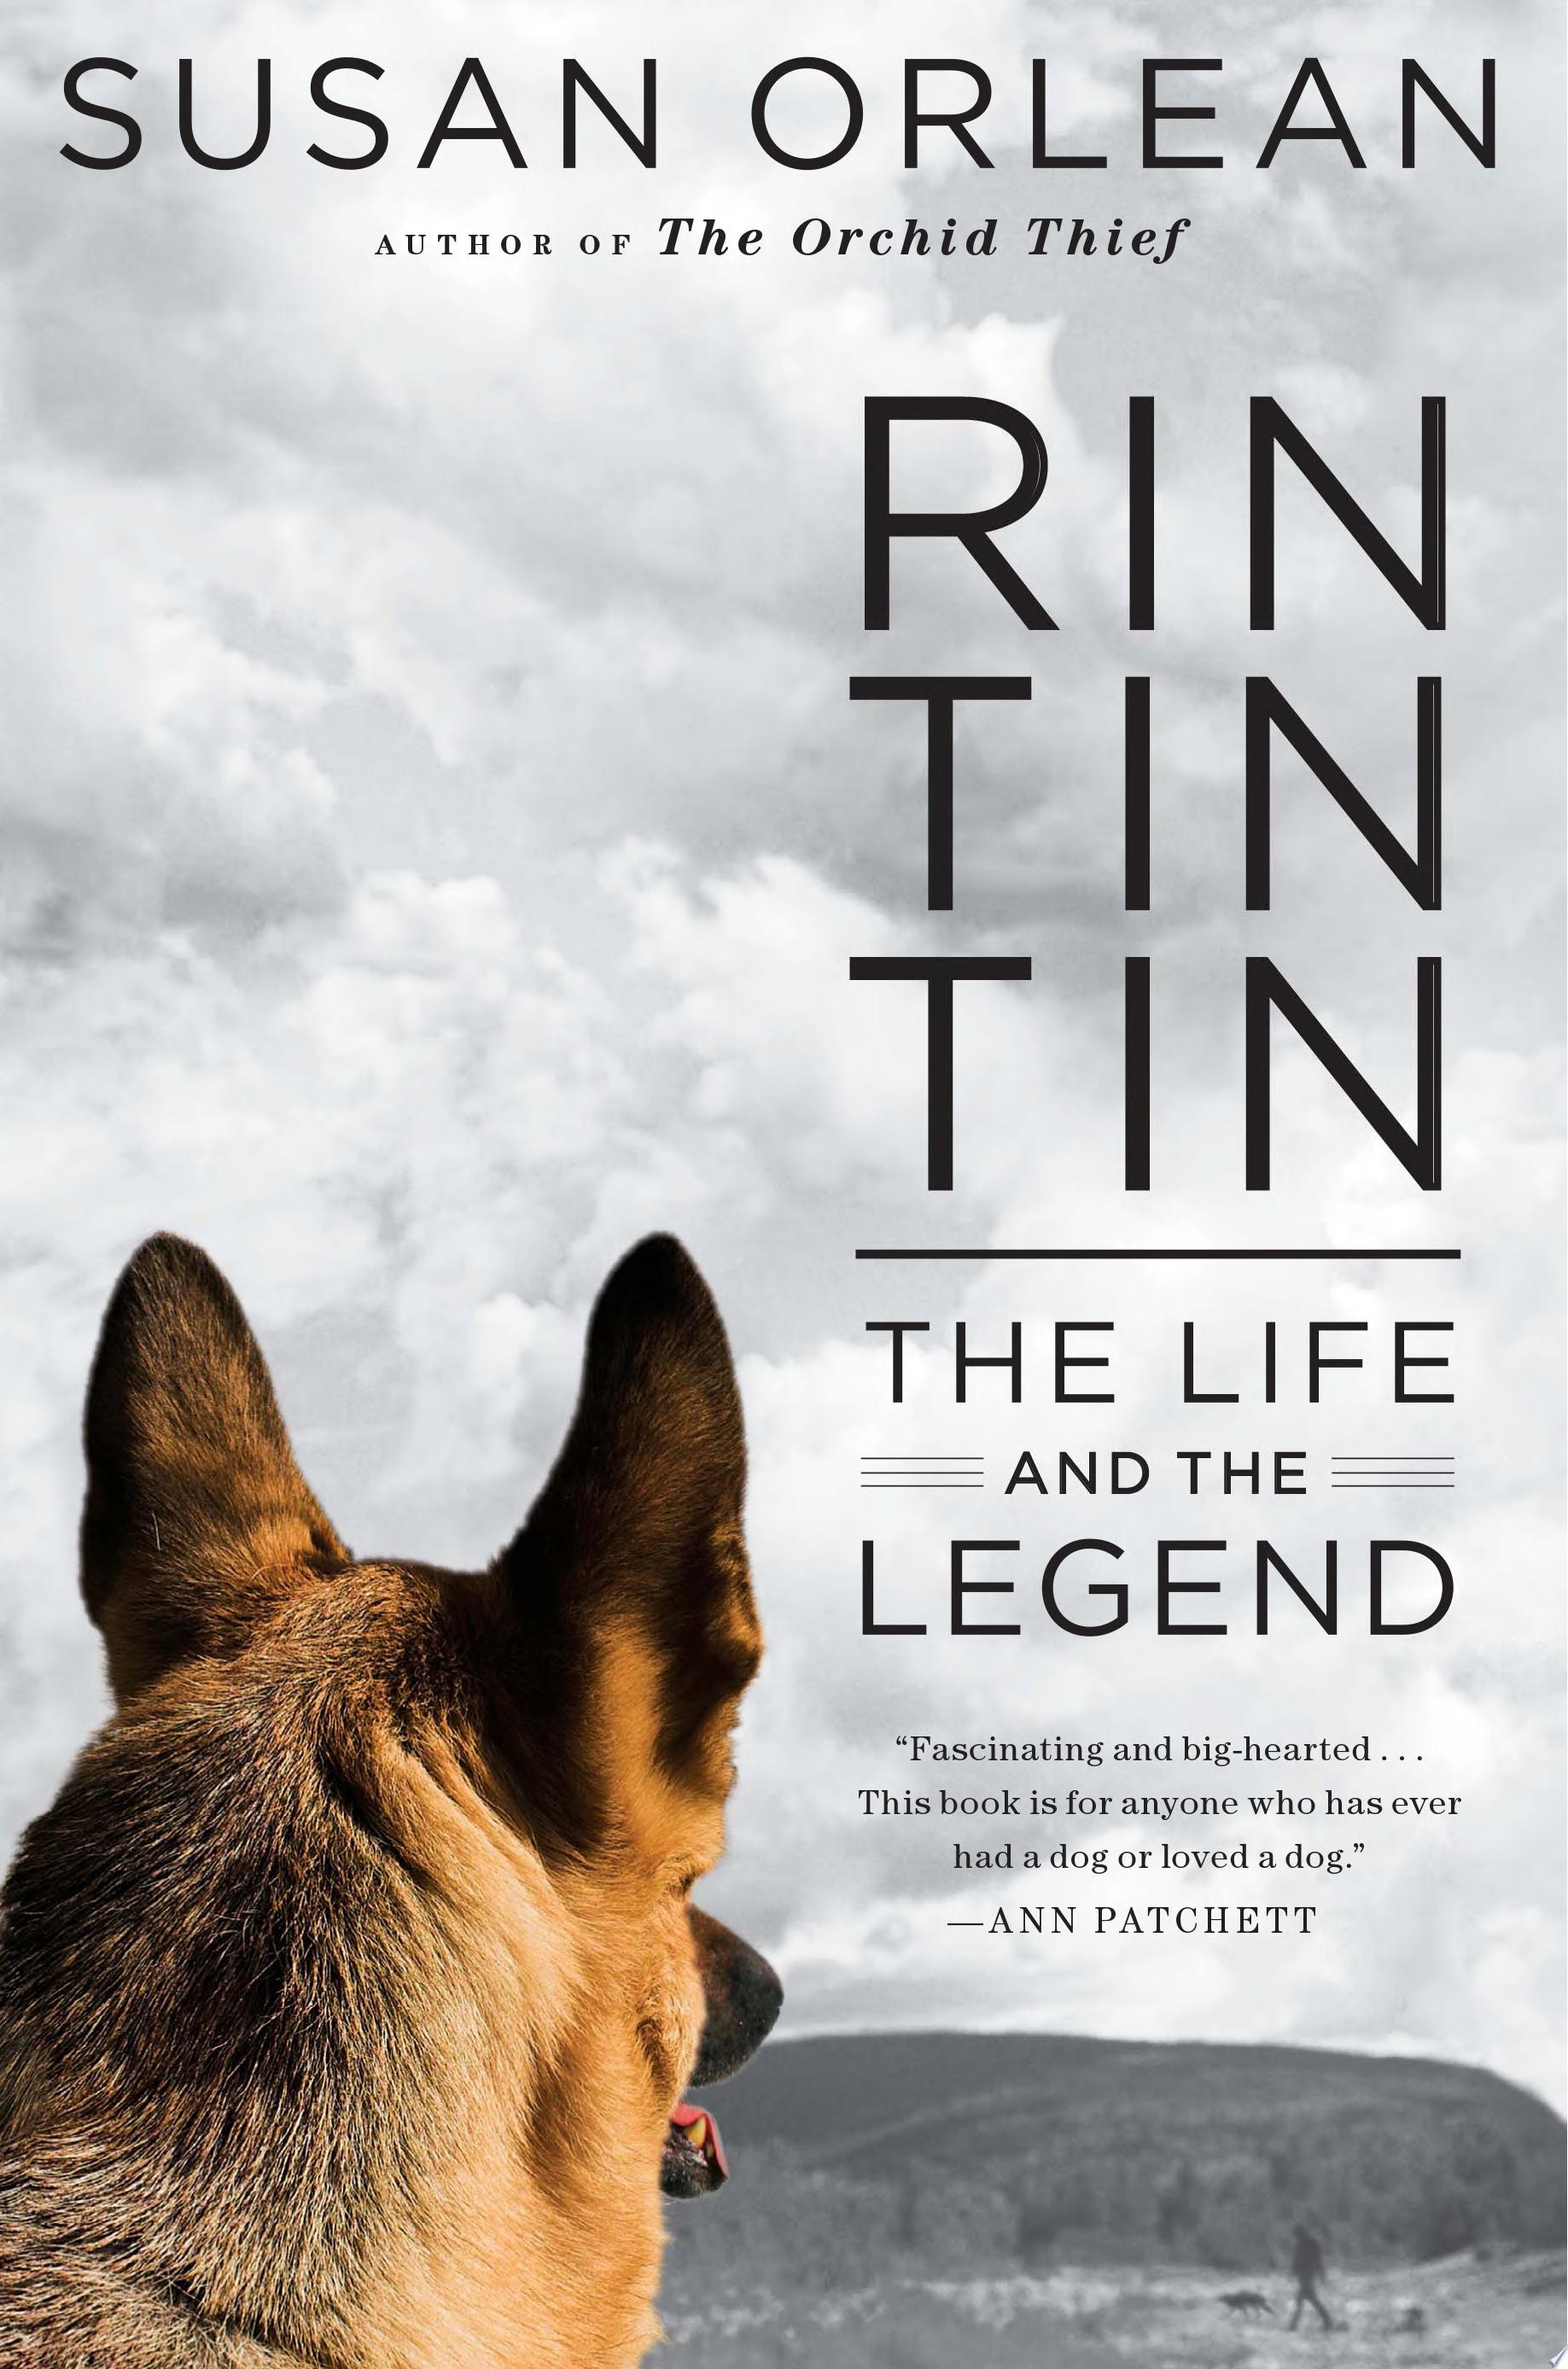 Image for "Rin Tin Tin"